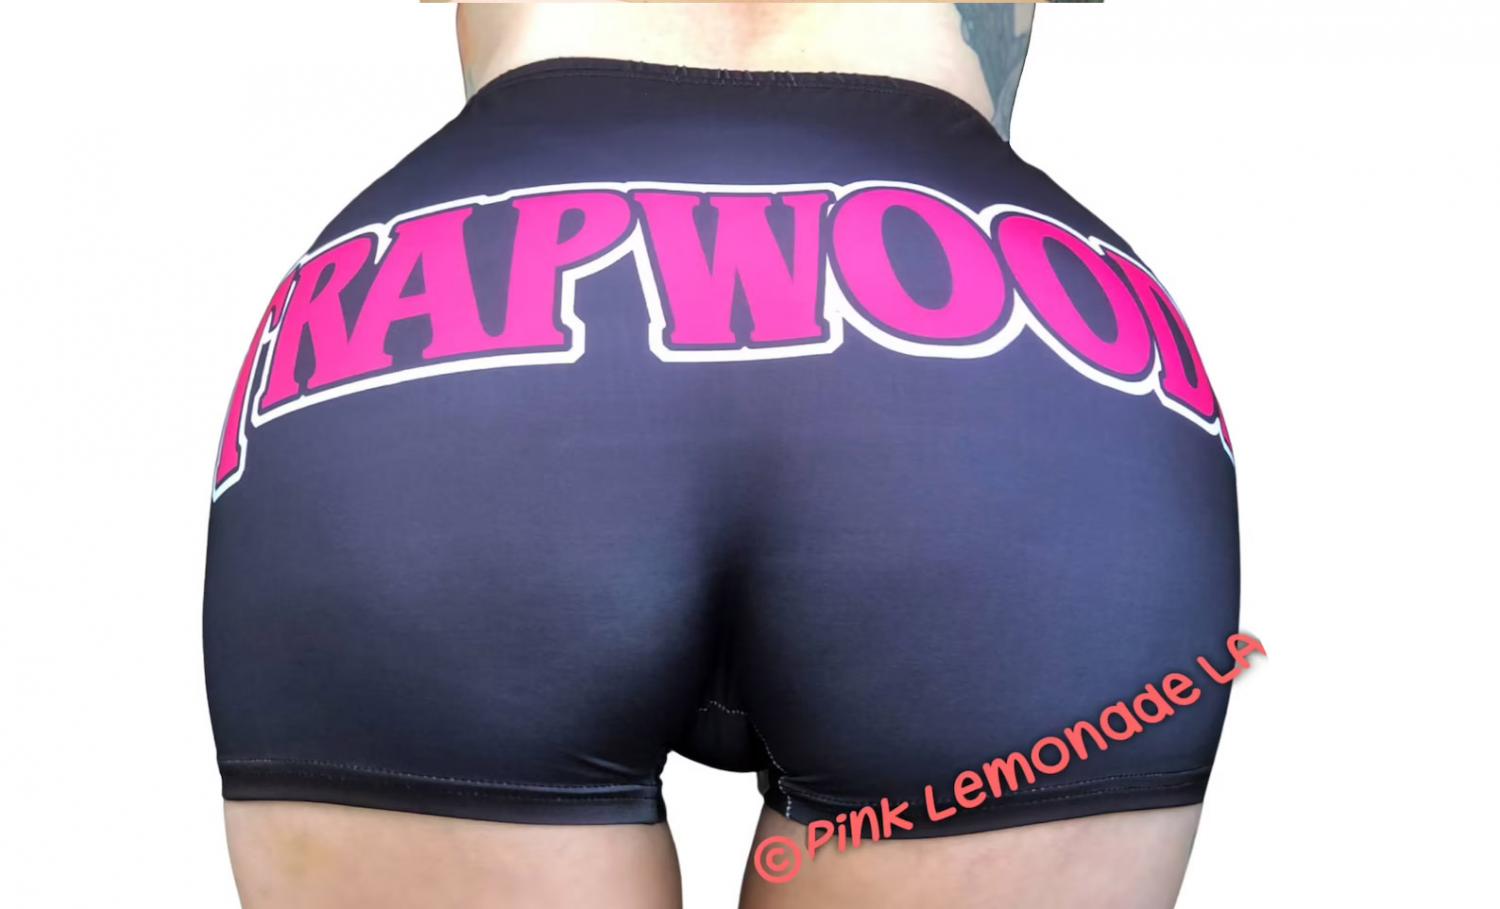 Snack Booty Shorts - Trapwoodz stretchy shorts